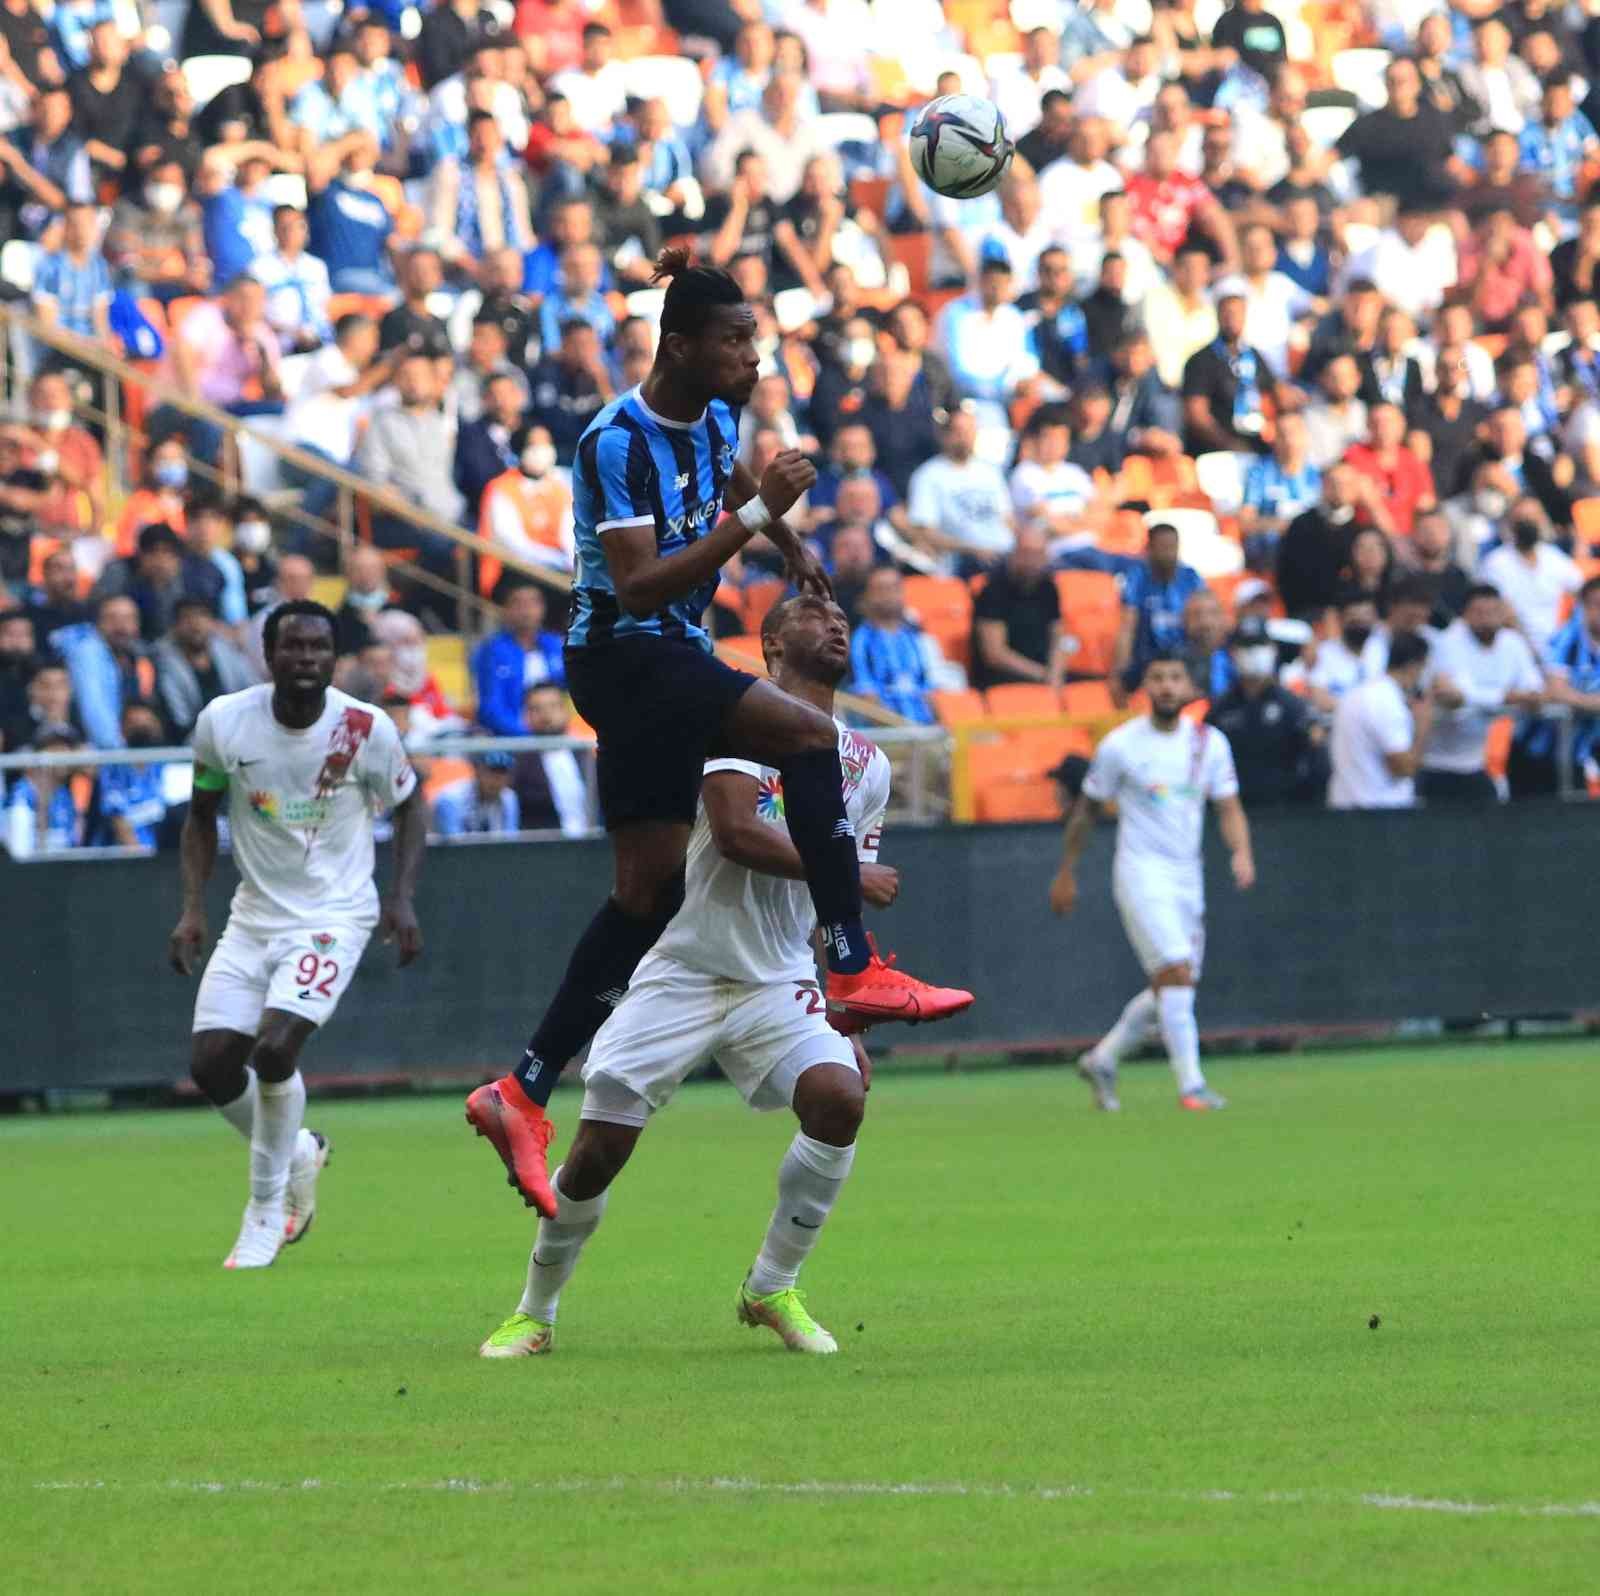 Spor Toto Süper Lig: Adana Demirspor: 0 - Hatayspor: 0 (İlk yarı) #adana